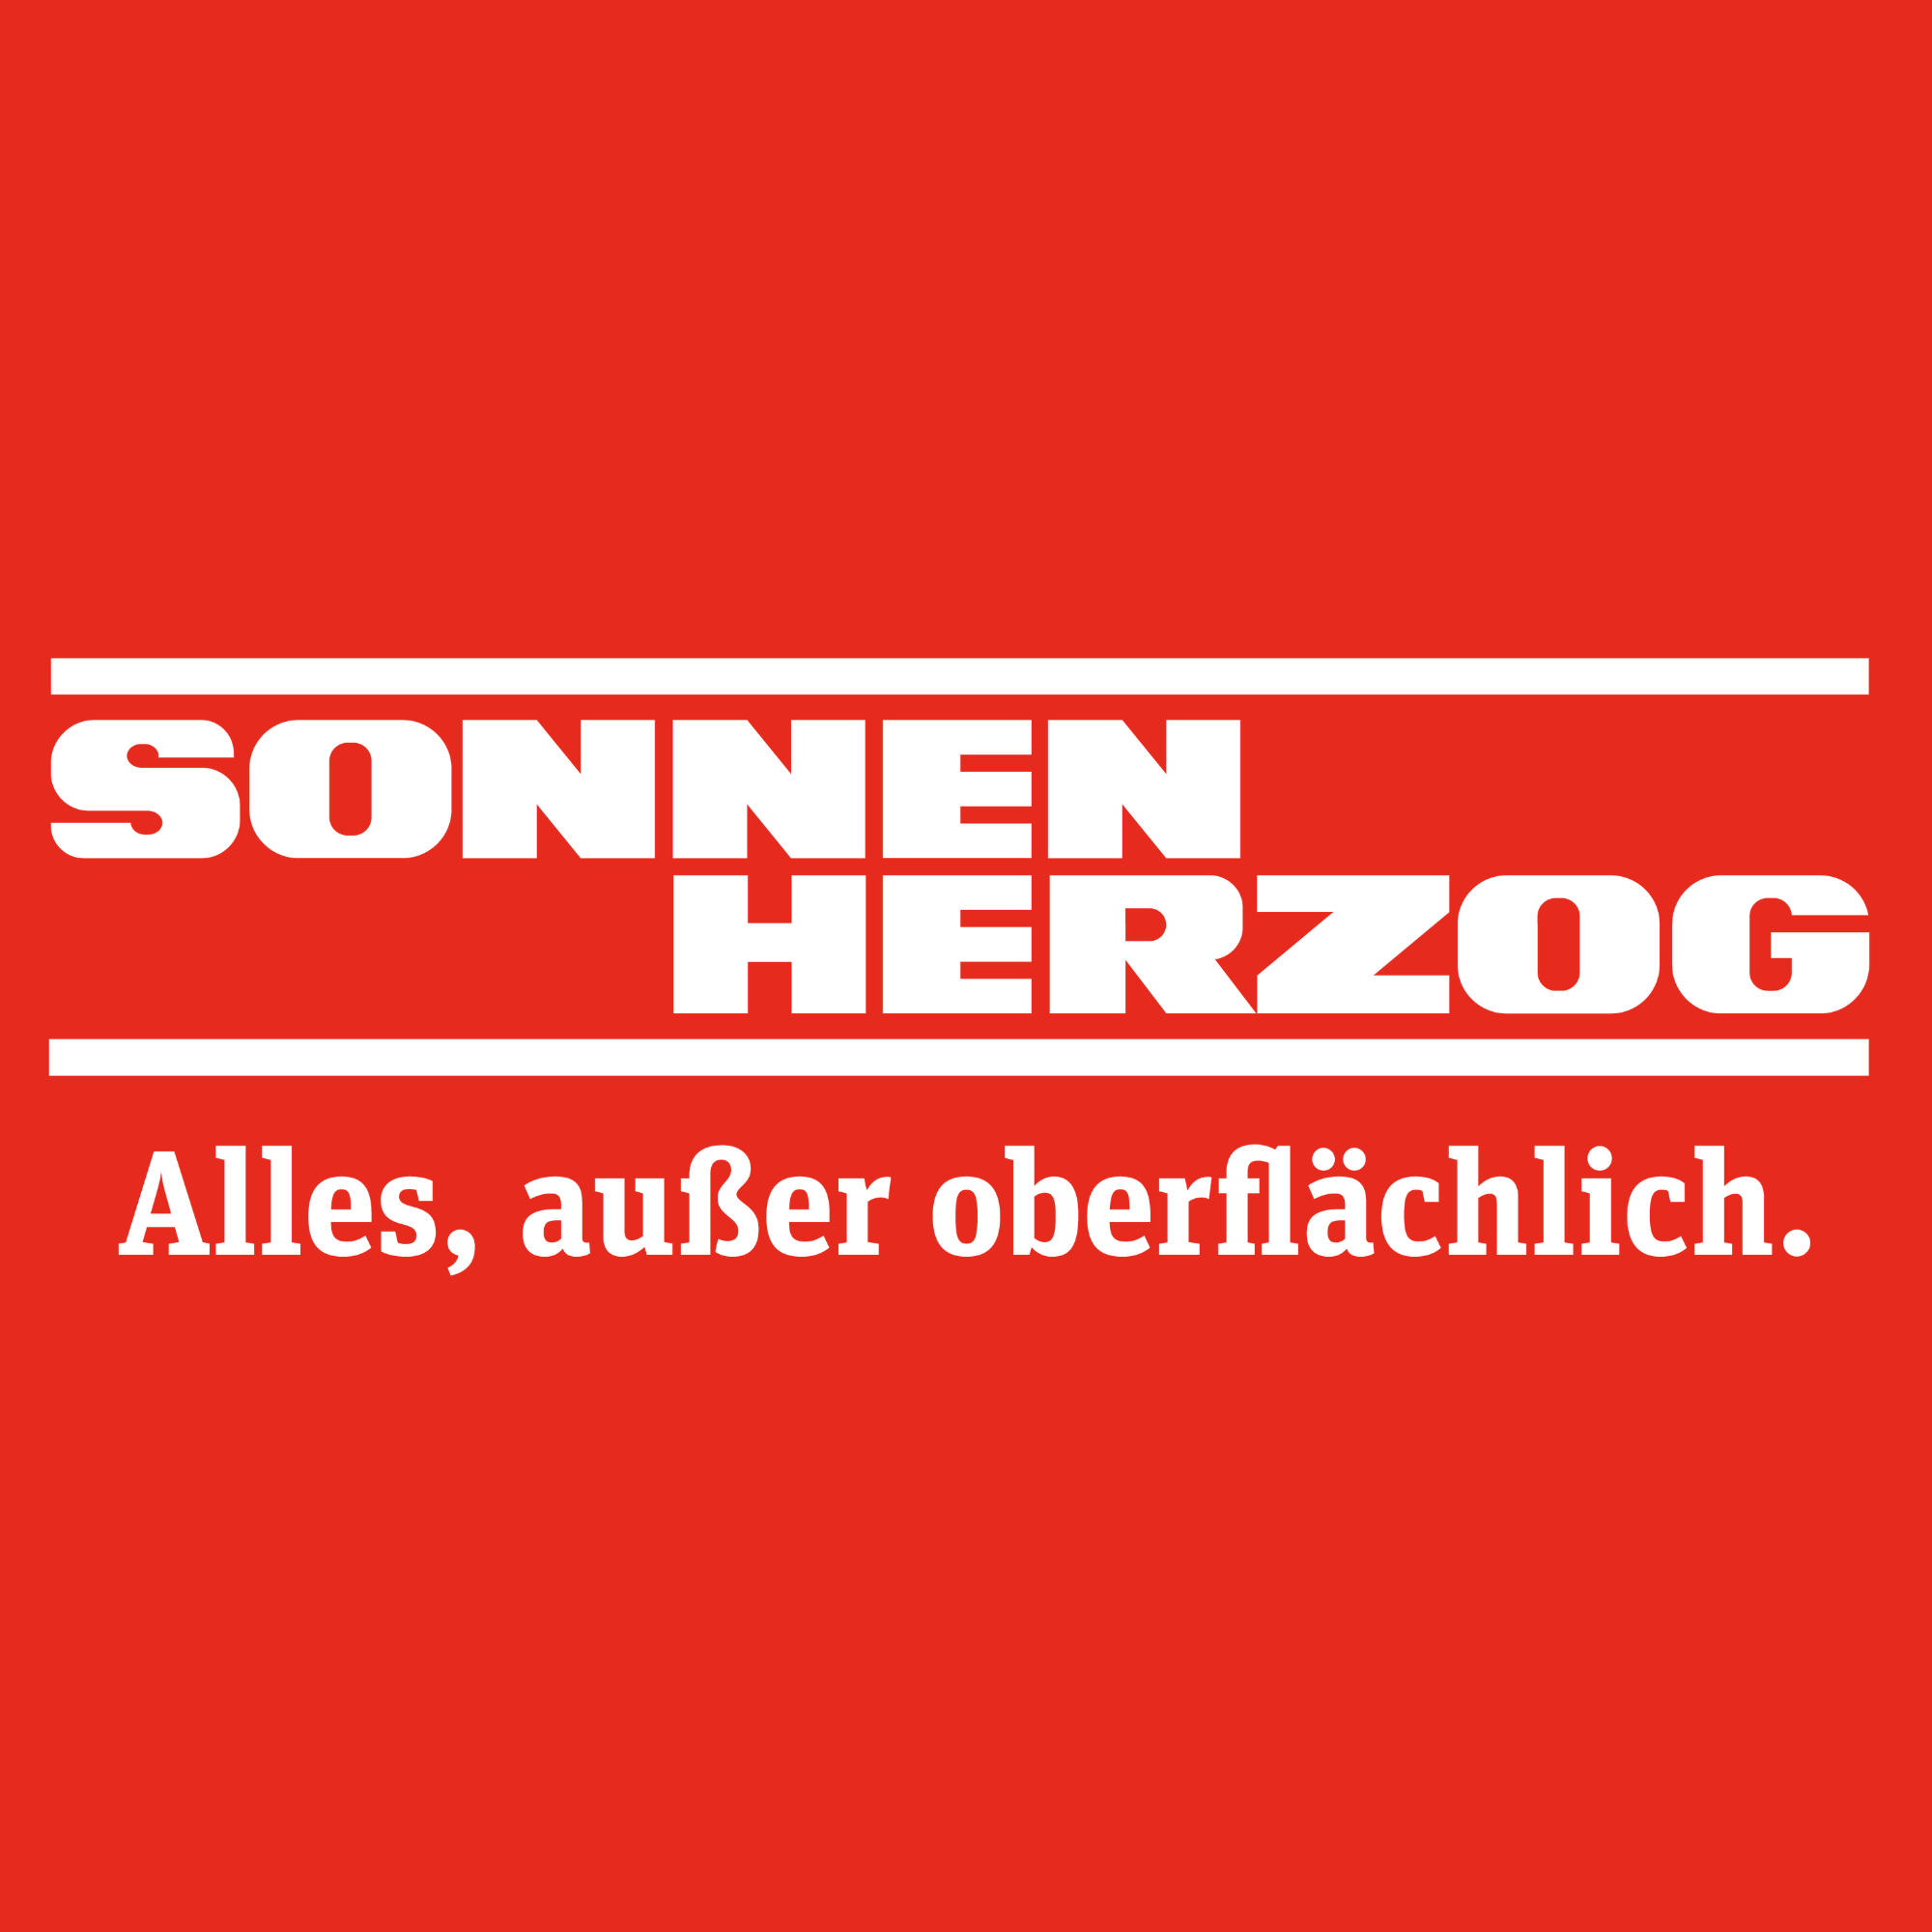 Sonnen Herzog GmbH & Co. KG in Bergisch Gladbach - Logo